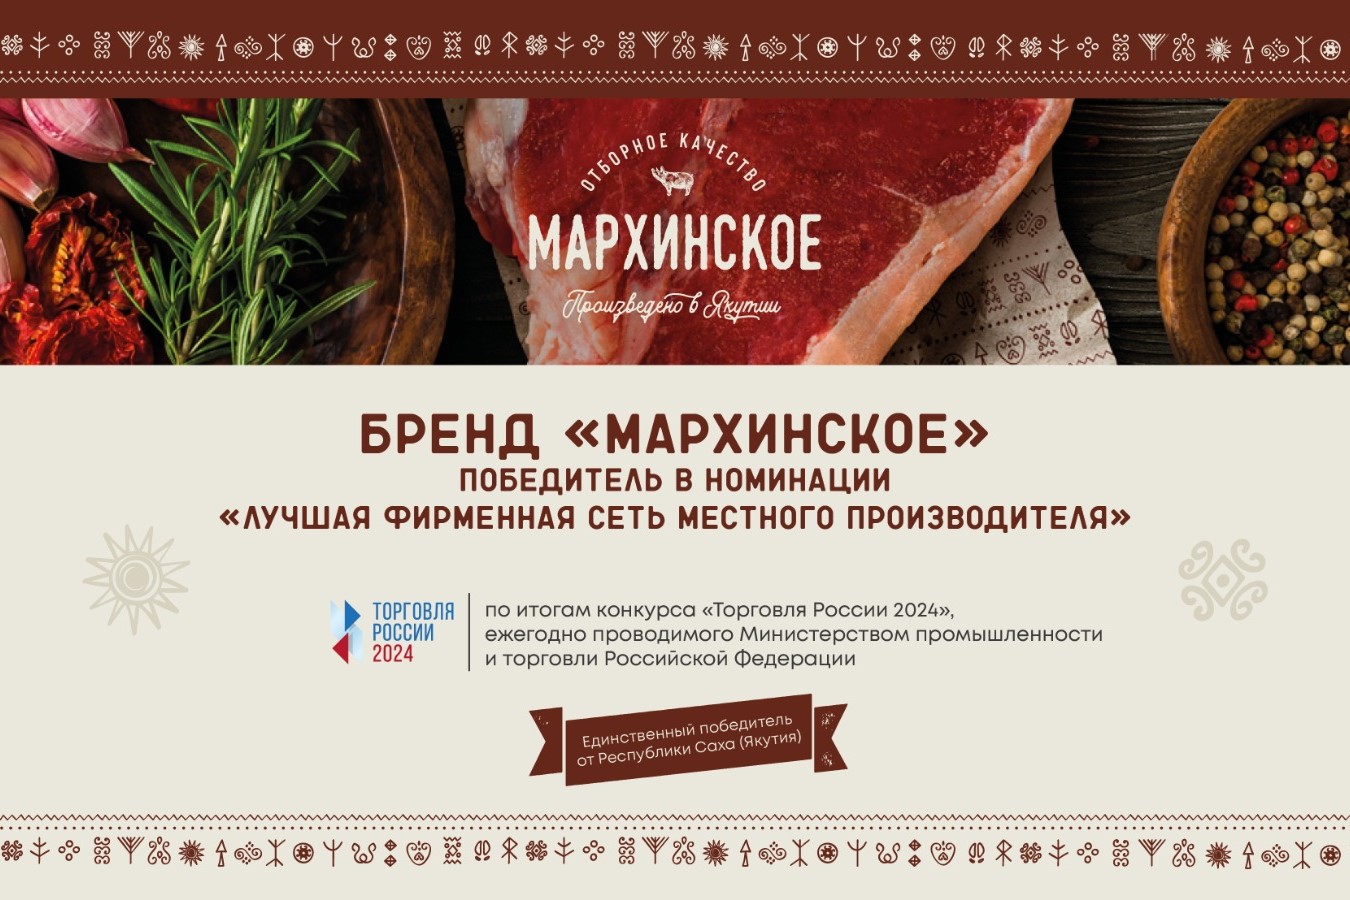 Бренд «Мархинское» стал победителем в престижном конкурсе «Торговля России» 2024» в номинации «Лучшая фирменная сеть местного производителя»